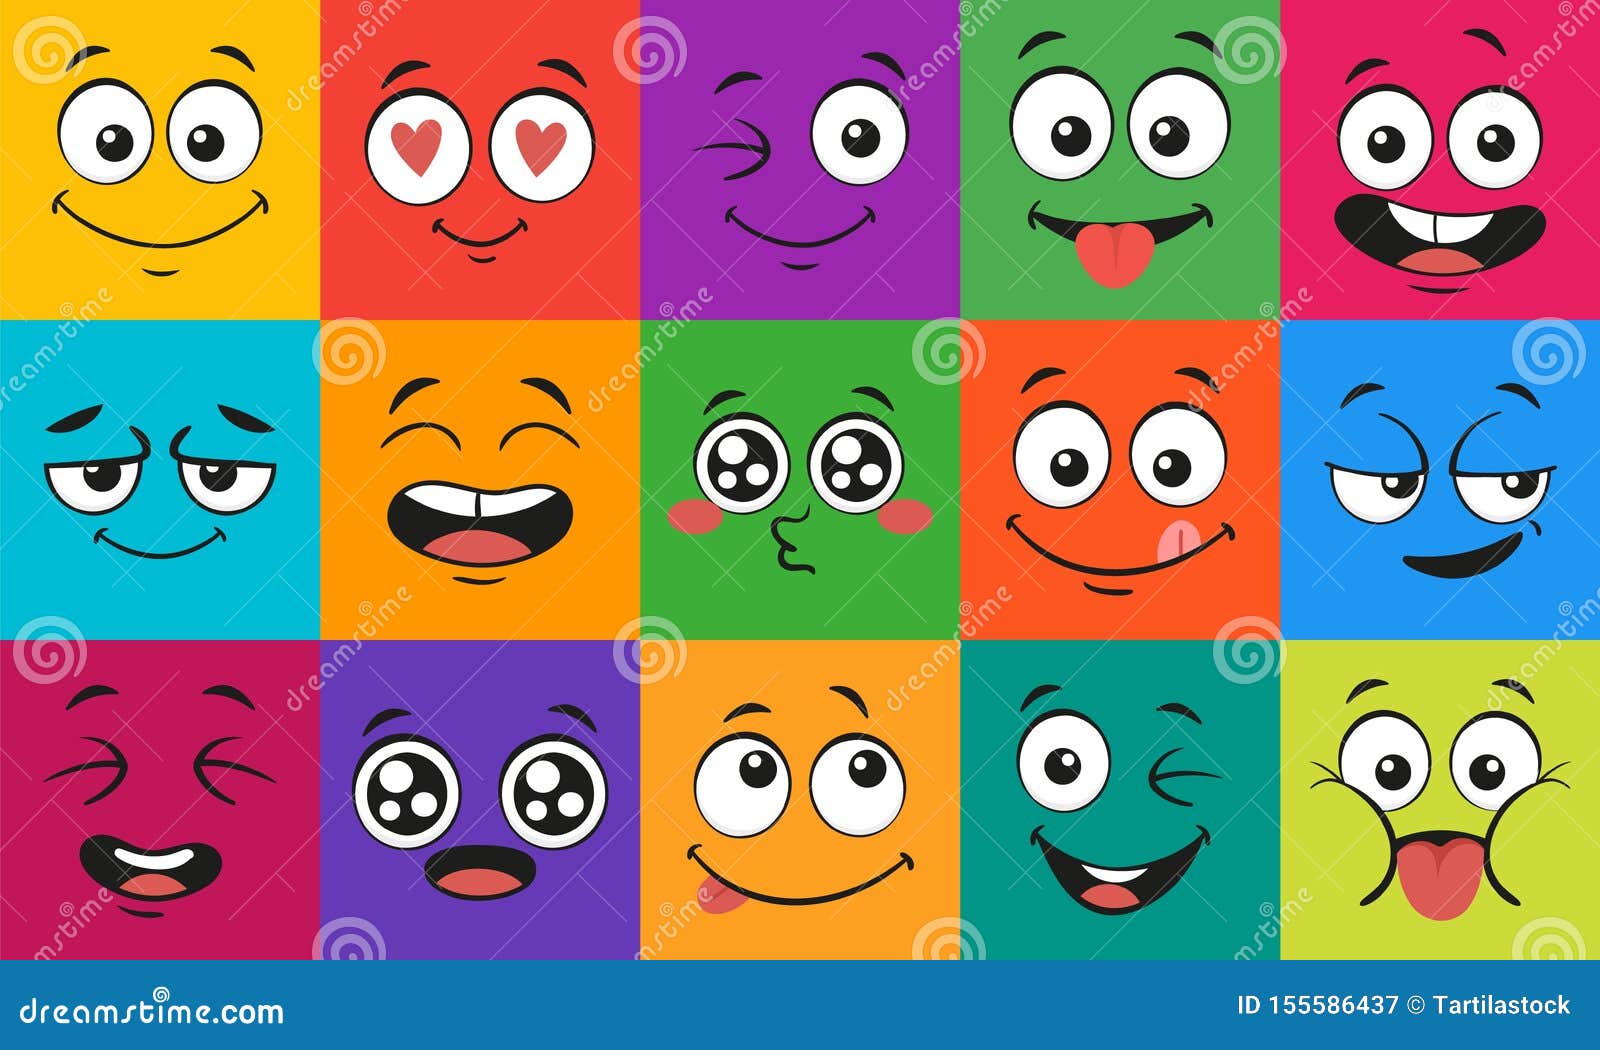 Espressioni del fronte del fumetto I fronti sorpresi felici, caratteri di scarabocchio dicono ed insieme dell'illustrazione di ve. Espressioni del fronte del fumetto I fronti sorpresi felici, caratteri di scarabocchio dicono ed occhi Scarabocchio del fronte o lanciare, amare e baciare emozione di manga di kawaii Insieme comico dell'illustrazione di vettore dell'avatar dell'emoticon